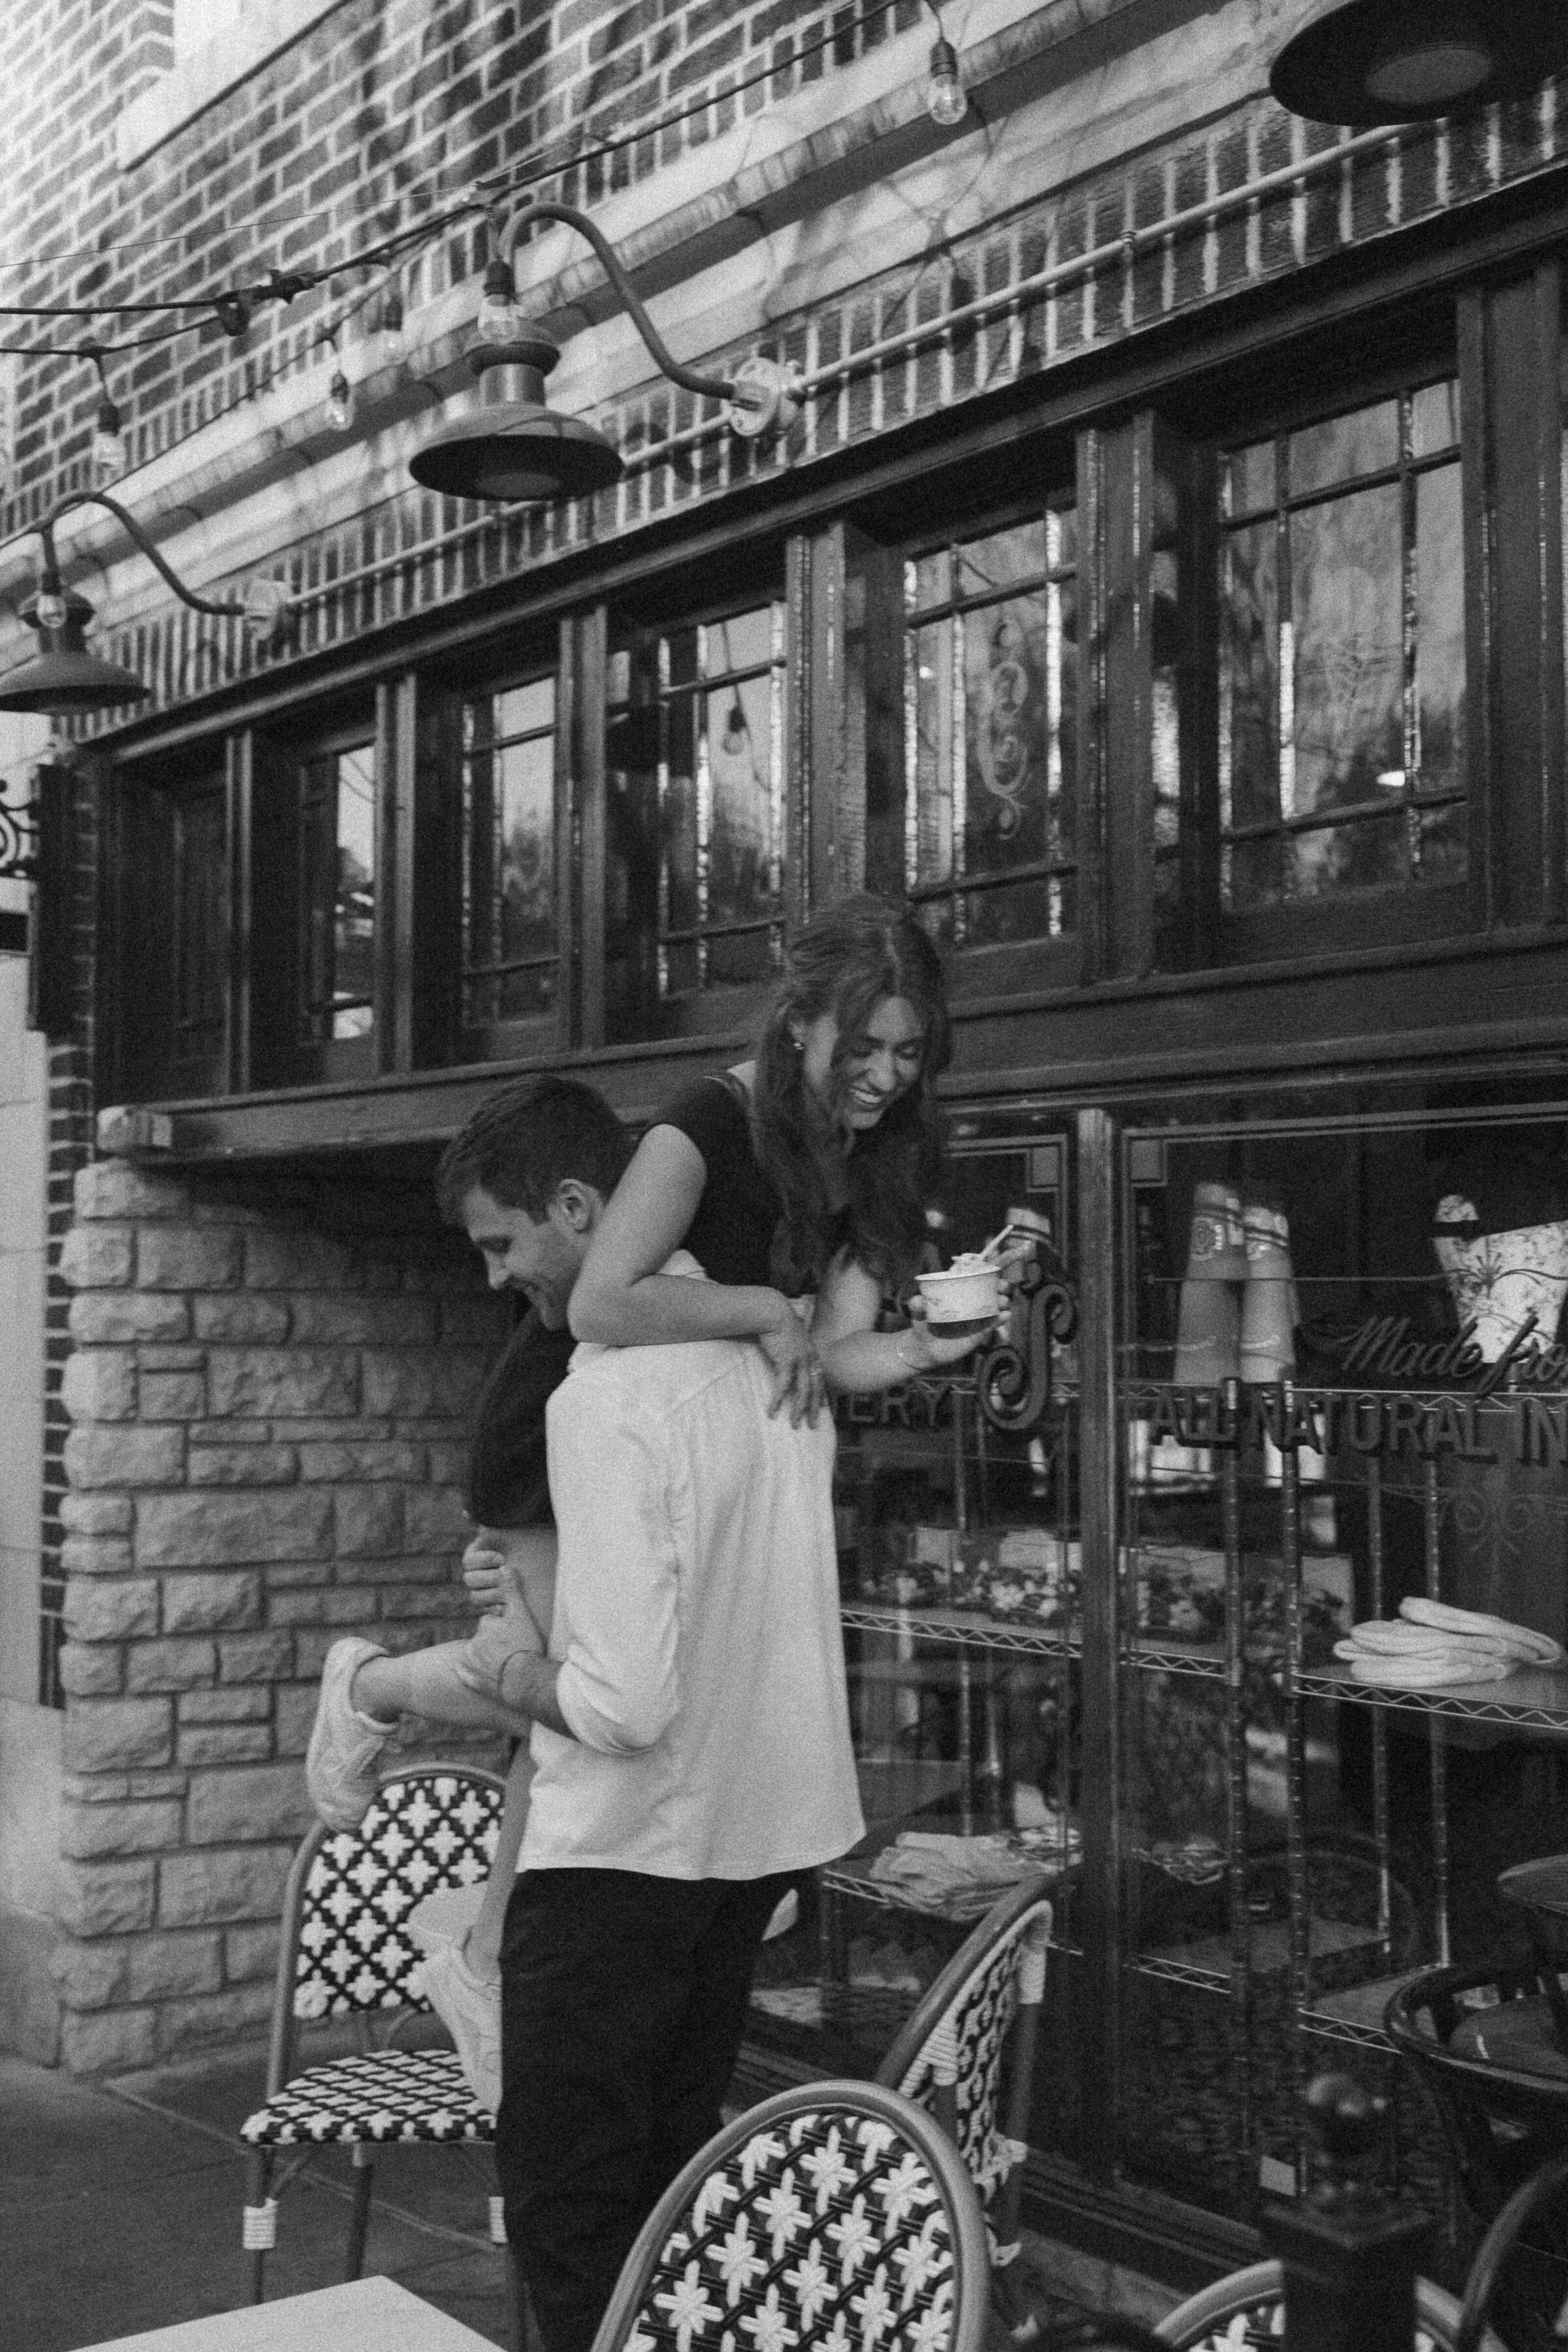 Monochrome shot of a man piggybacking a woman by a café.